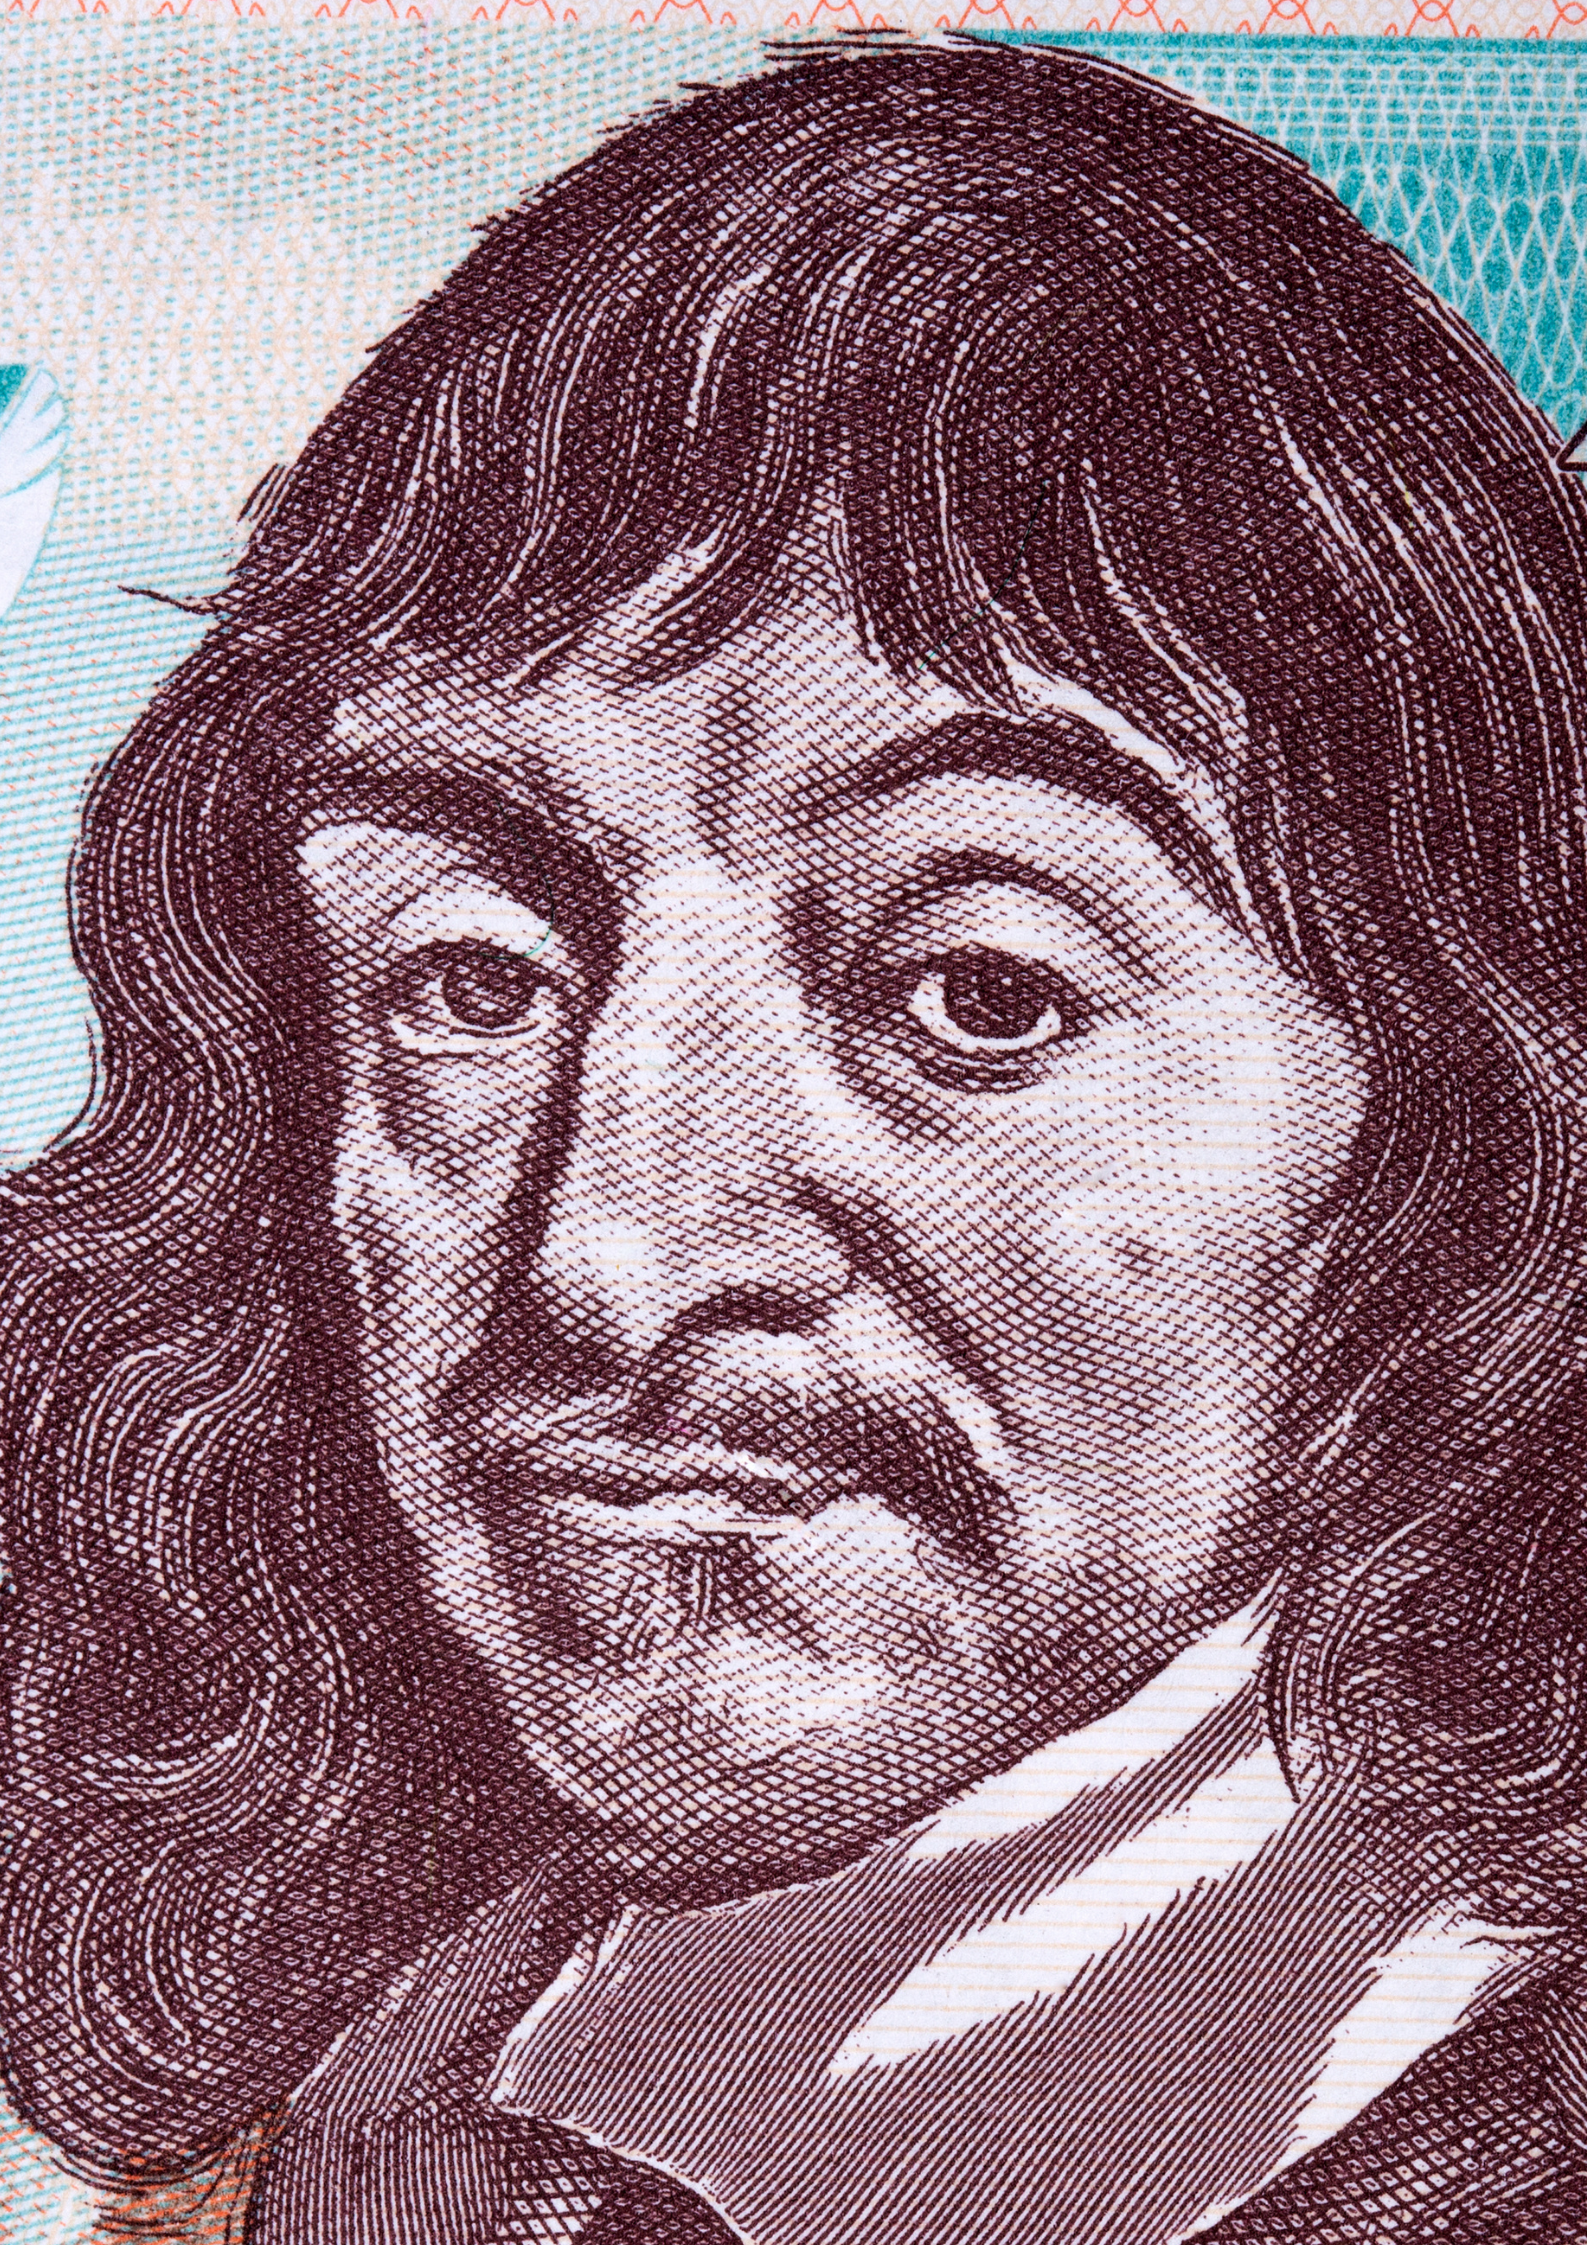 Descartes y filosofía del lenguaje